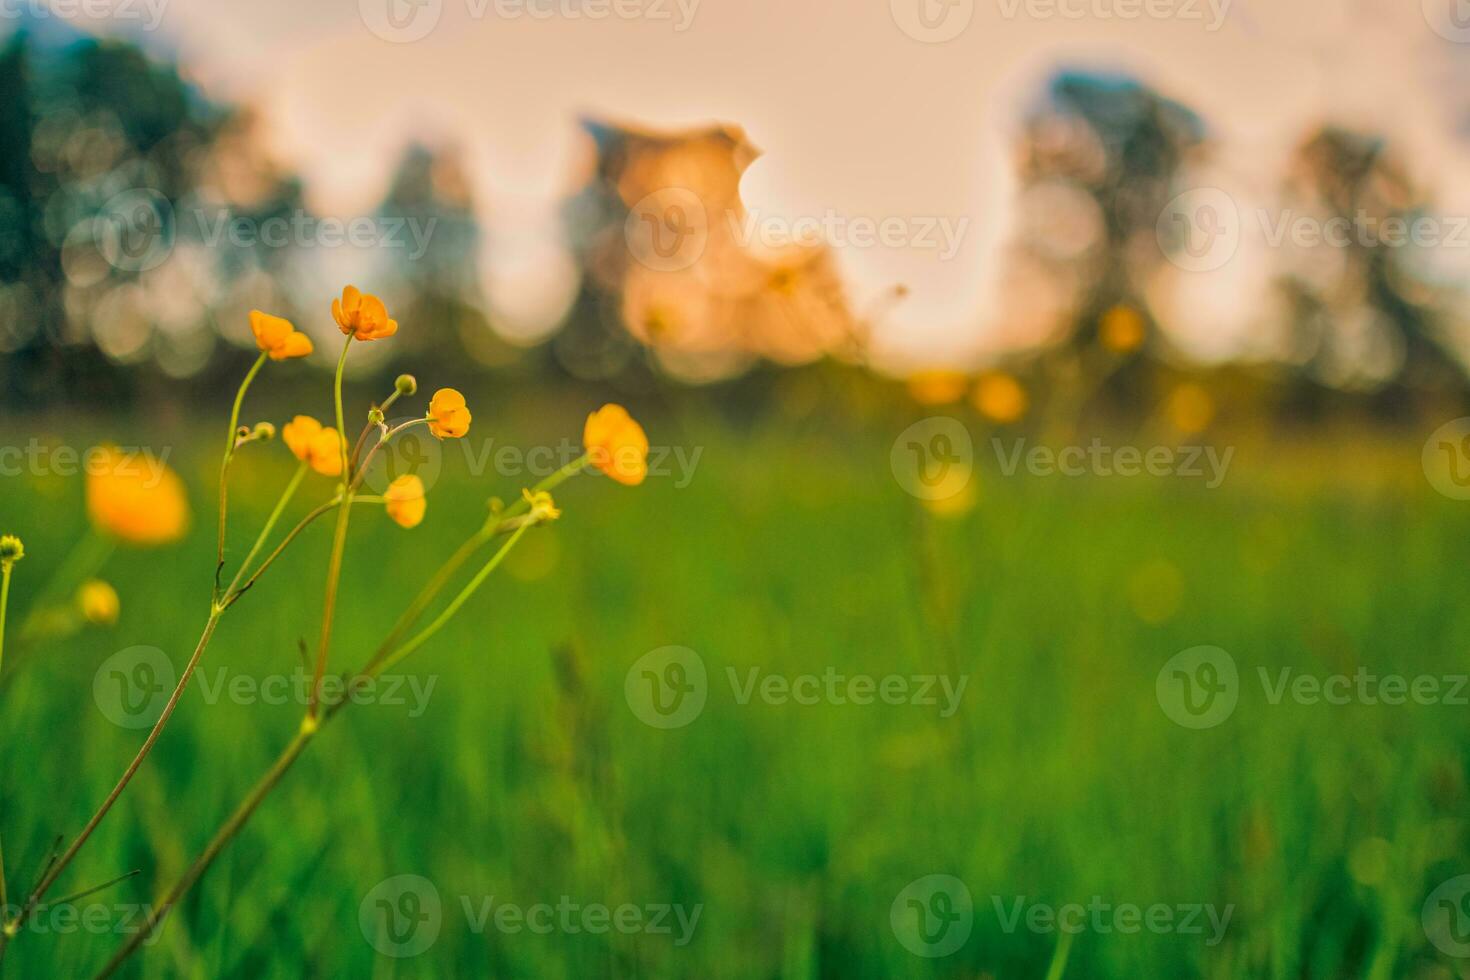 abstracte zachte focus zonsondergang veld landschap van gele bloemen en gras weide warme gouden uur zonsondergang zonsopgang tijd. rustige lente zomer natuur close-up en wazig bos achtergrond. idyllische natuur foto